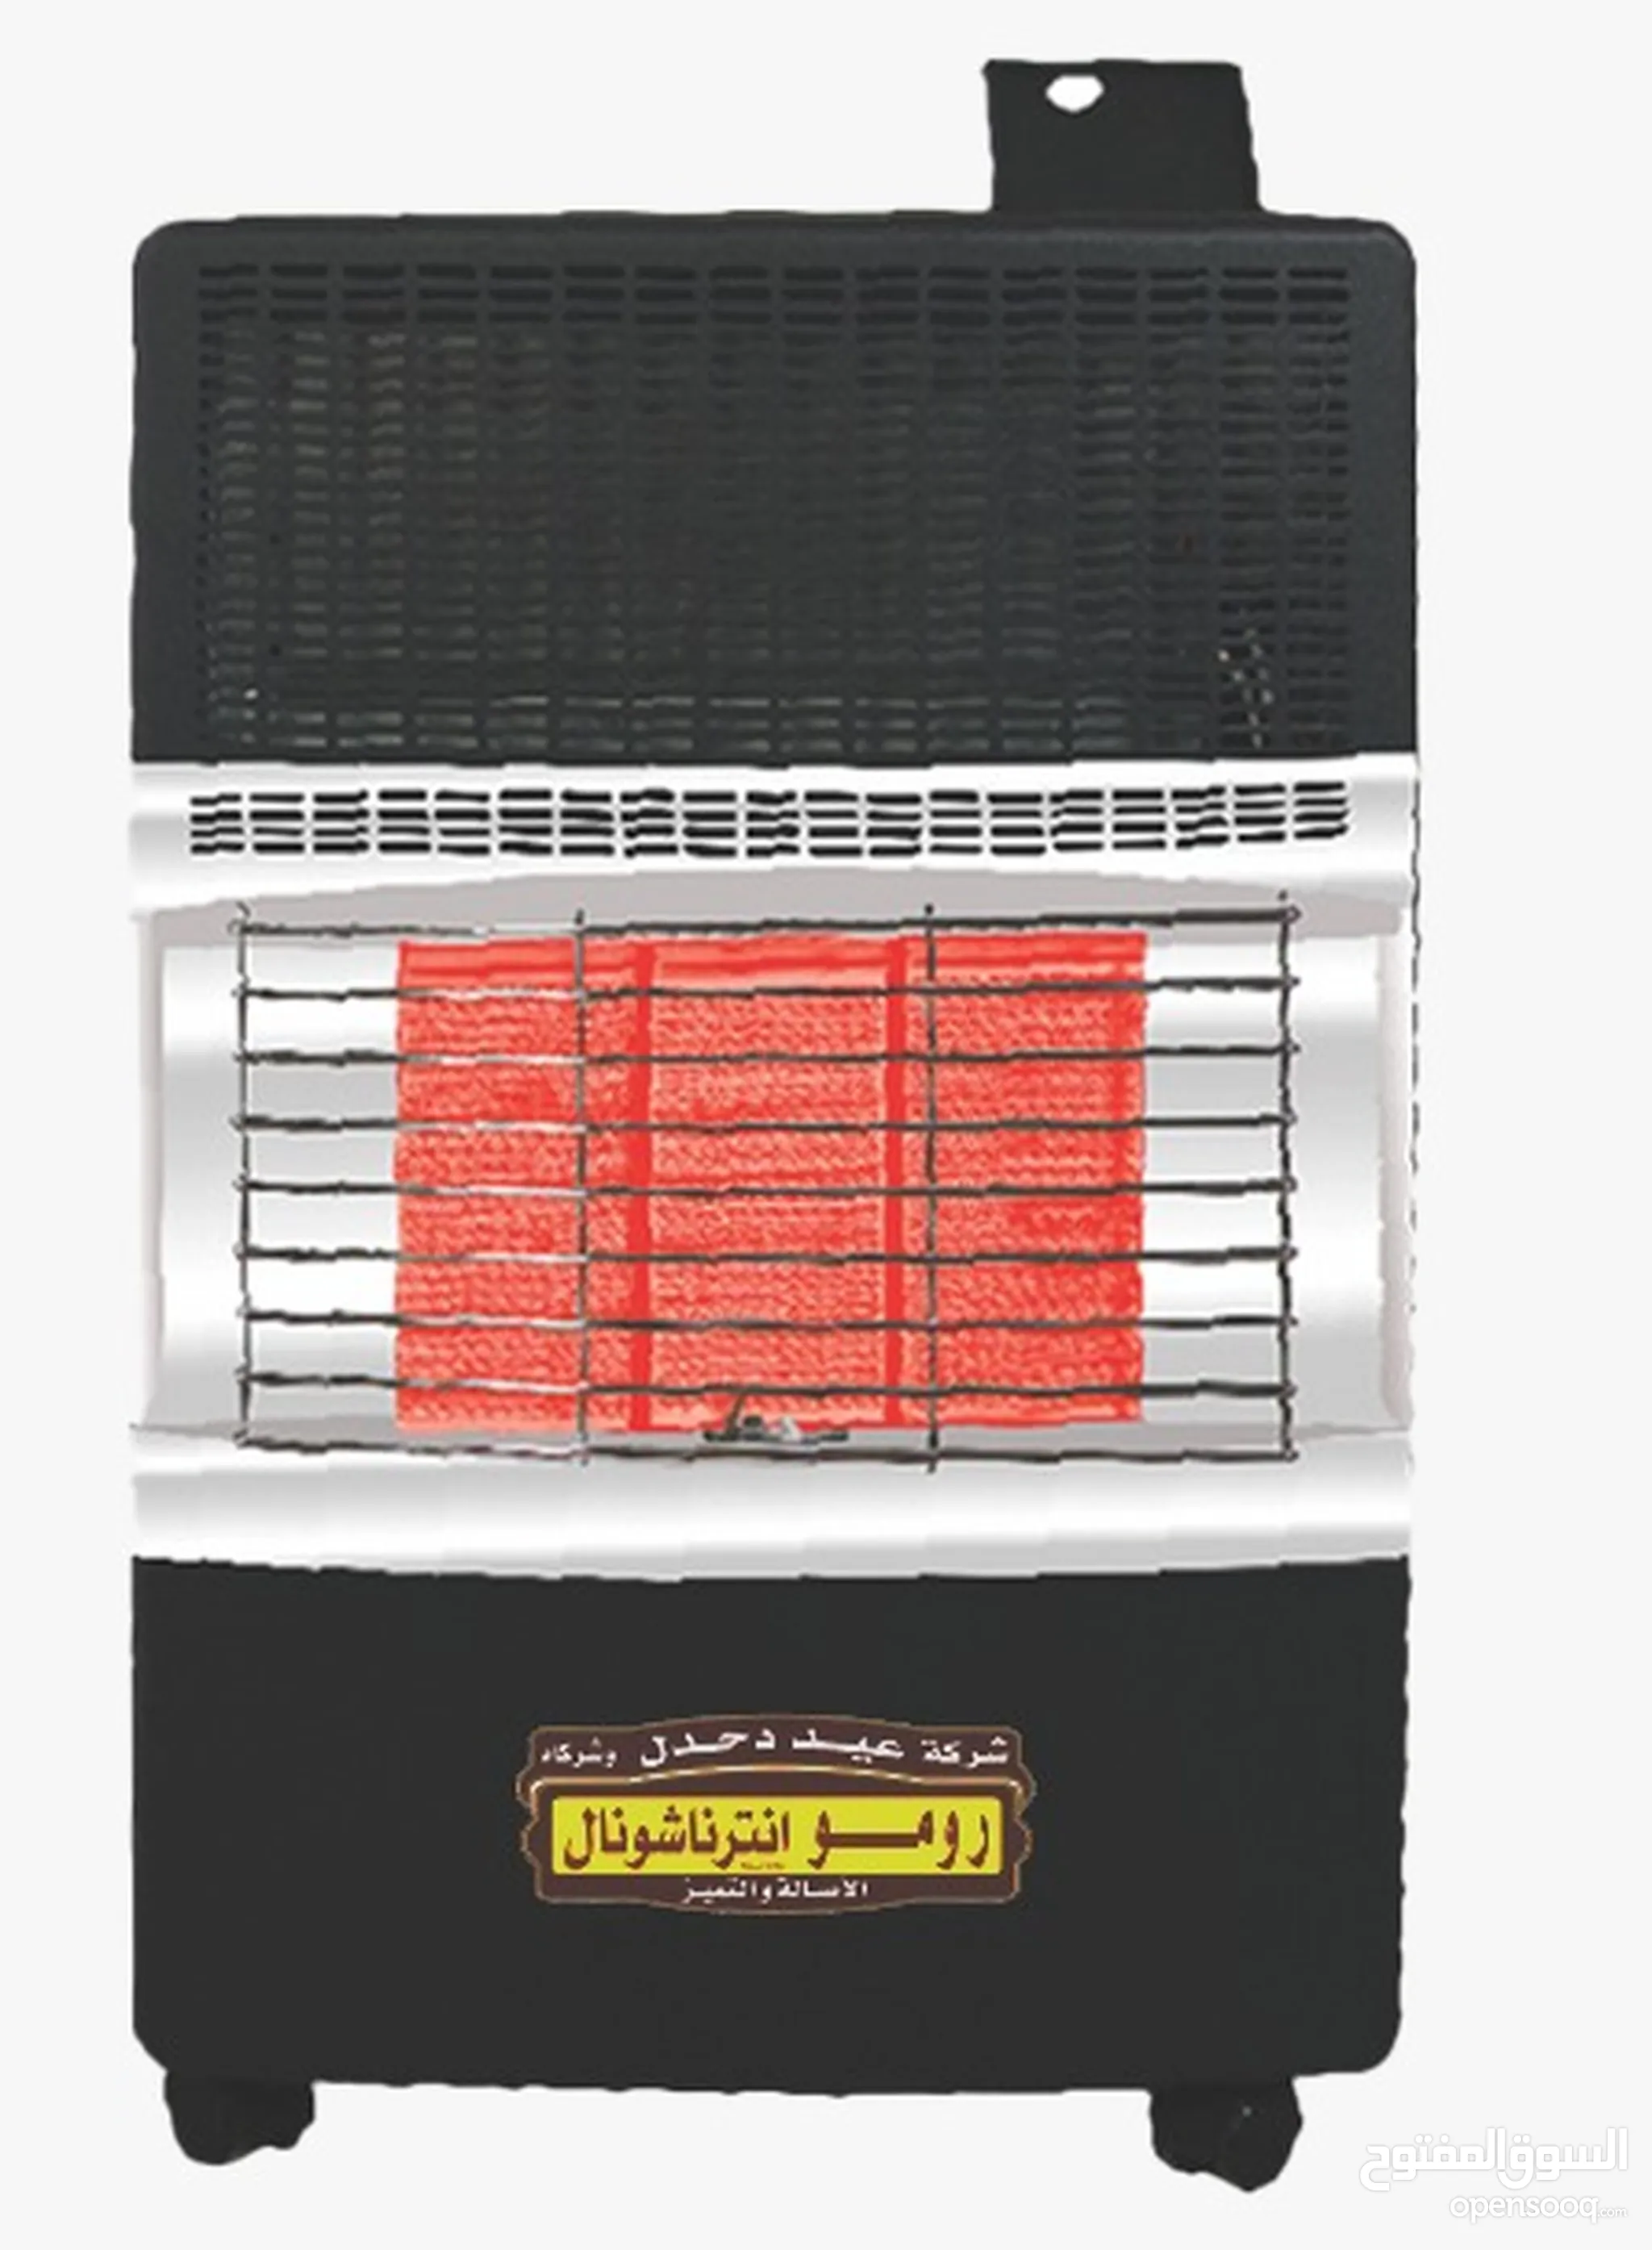 صوبة رومو - أفضل أسعار صوبات رومو في الأردن | السوق المفتوح